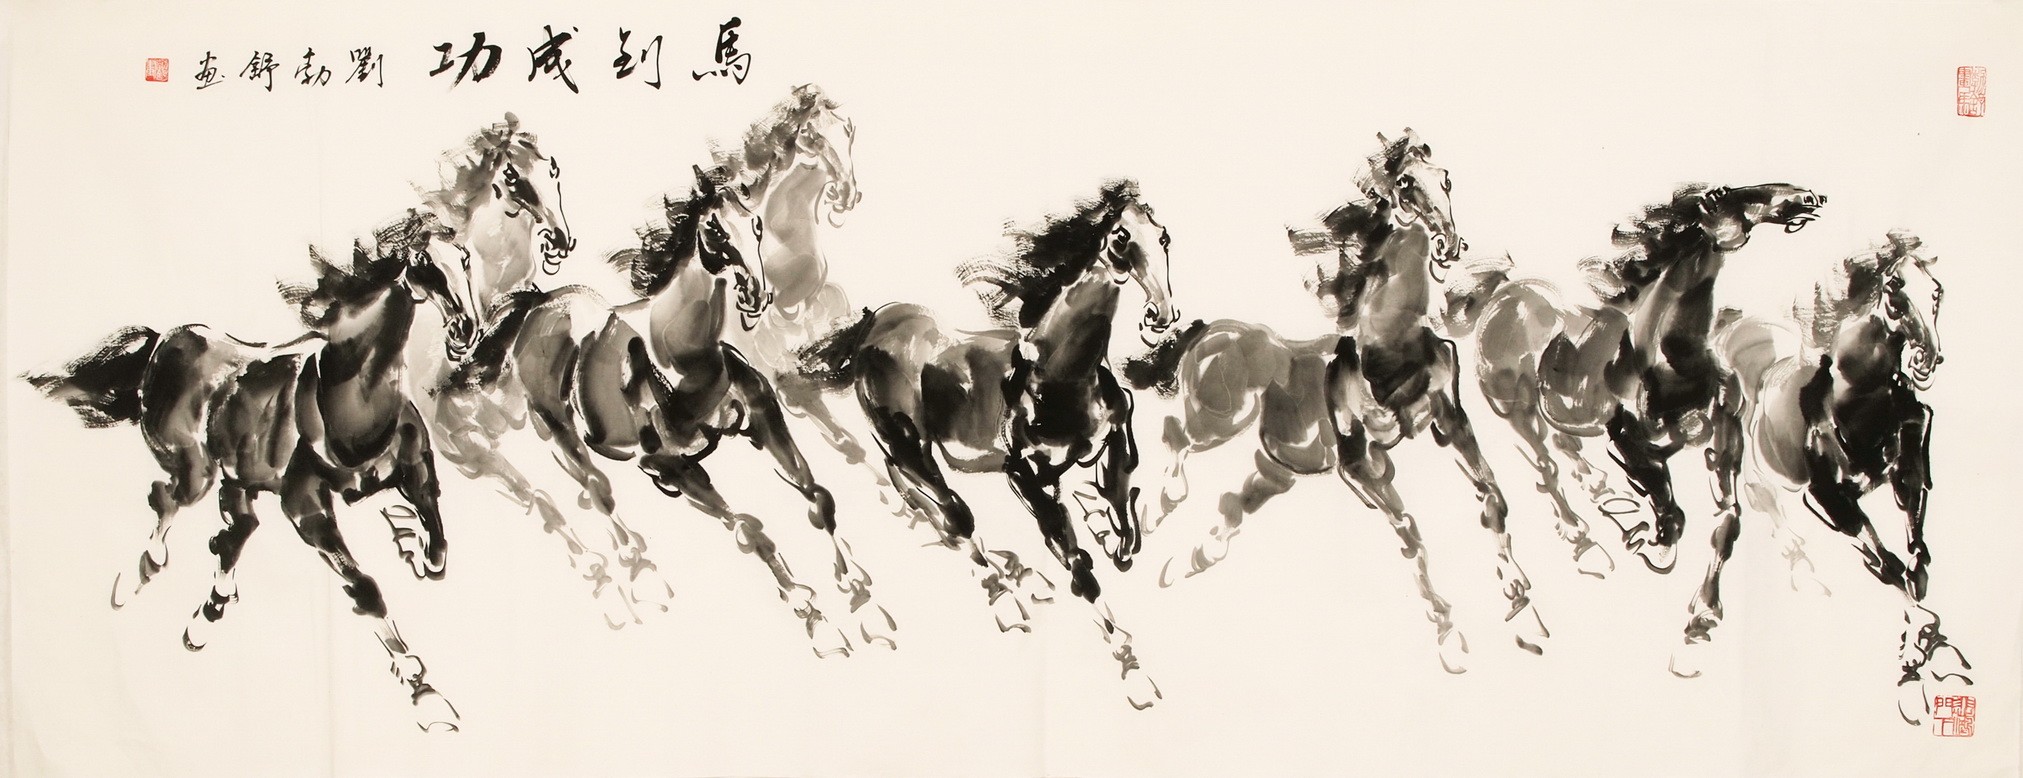 Horse - CNAG001969